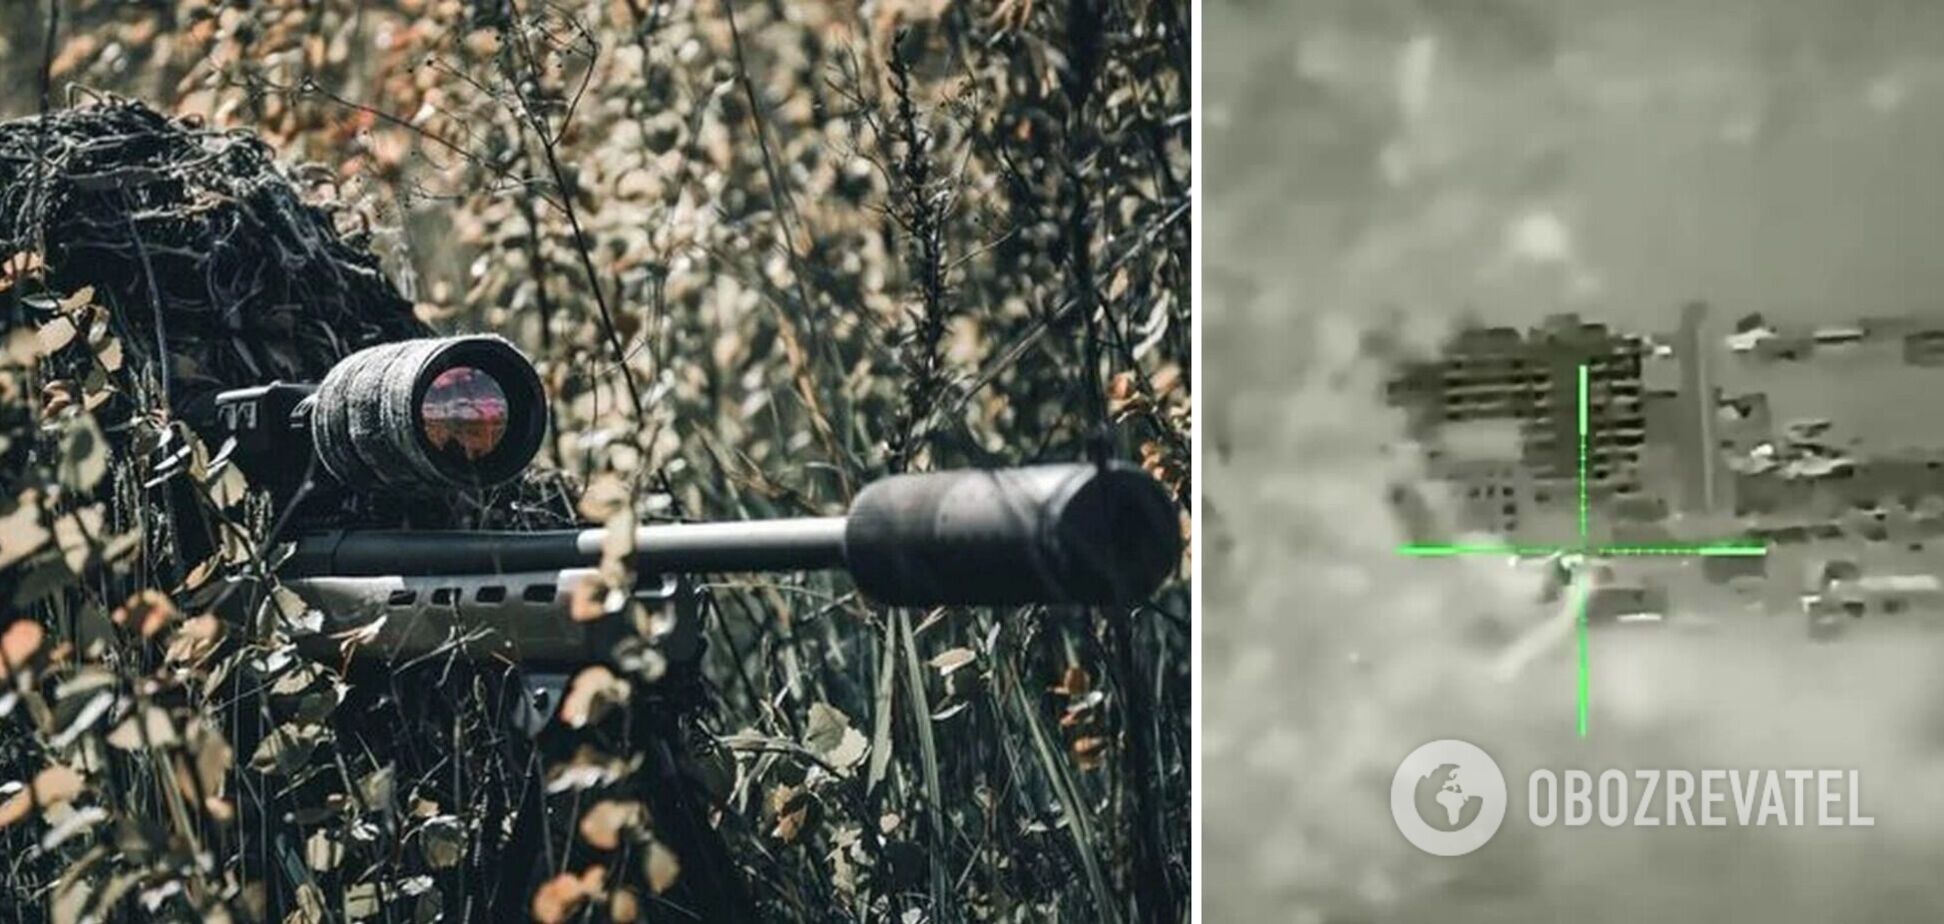 Працює Окрема президентська бригада: Сирський показав, як снайпери ЗСУ знищили двох росіян із дистанції 1500 метрів. Відео